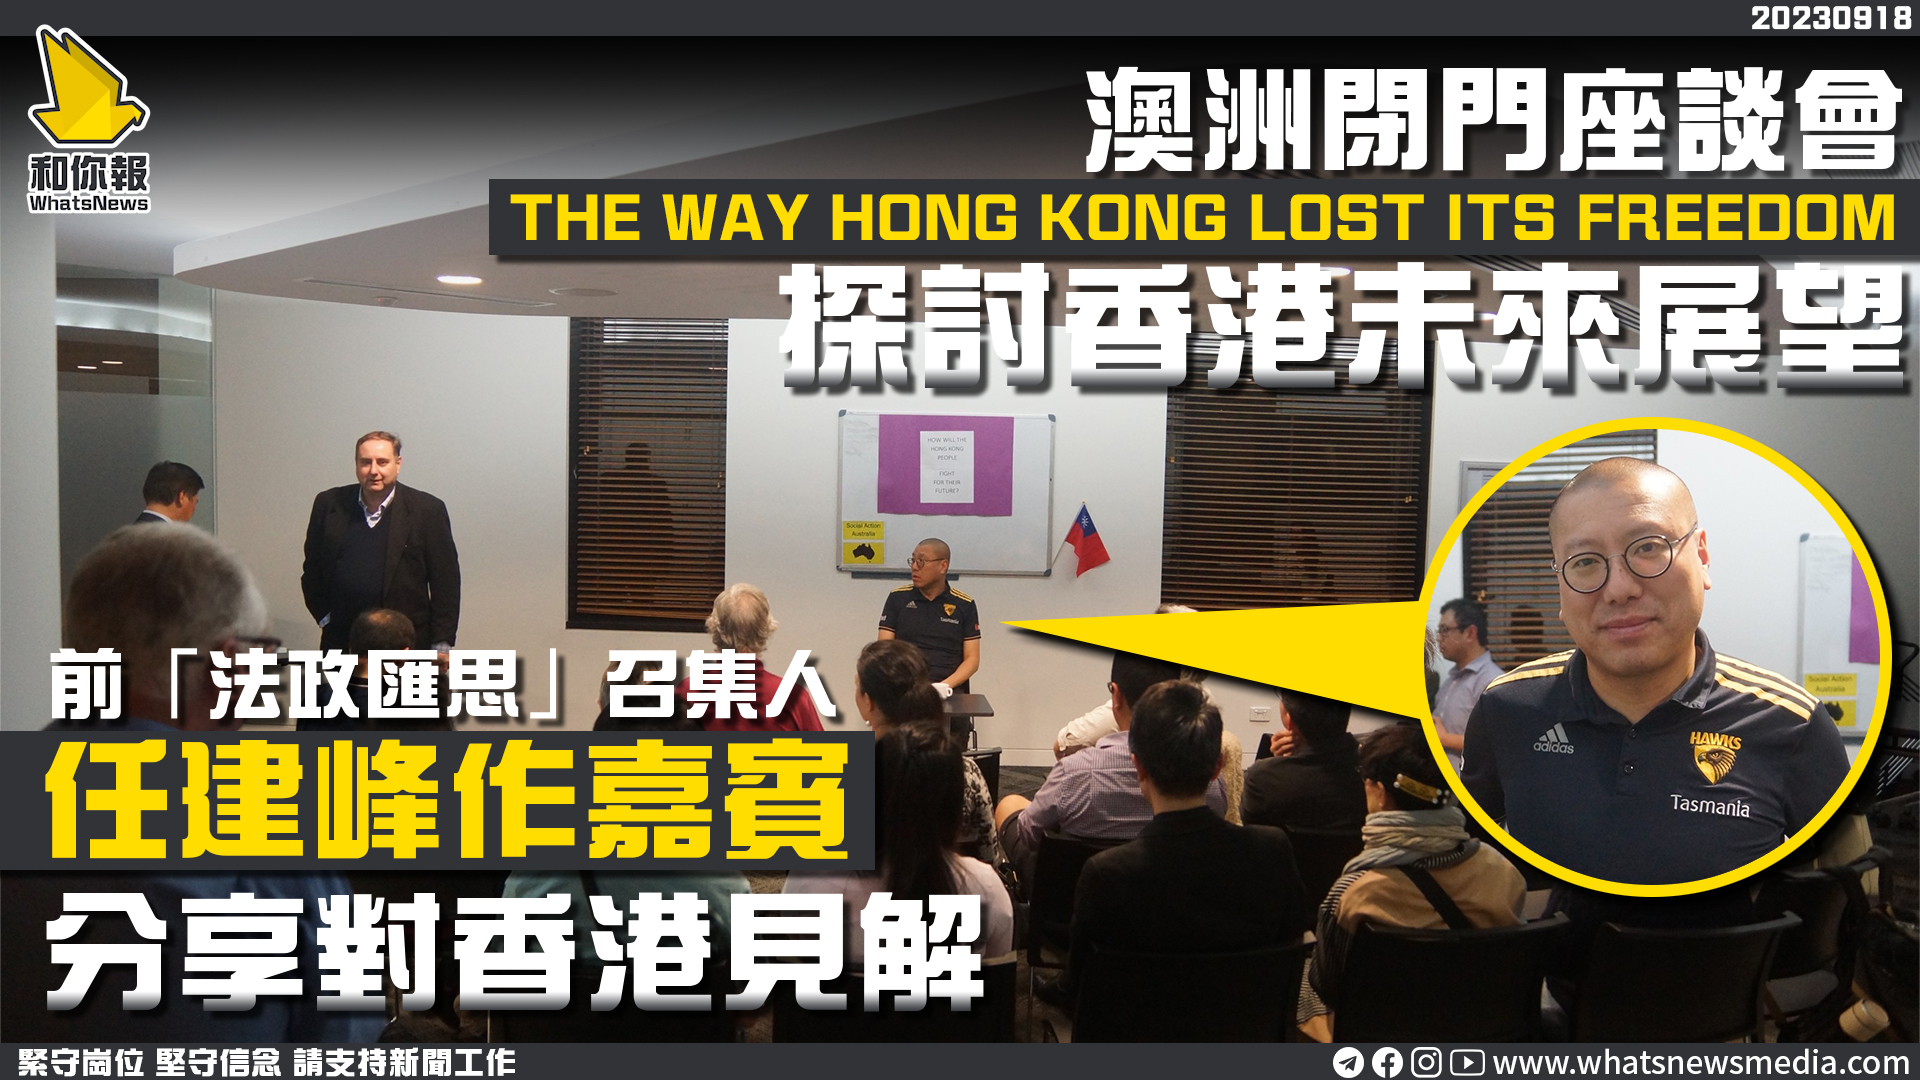 澳洲閉門座談會探討香港未來展望 任建峰作嘉賓分享對香港見解